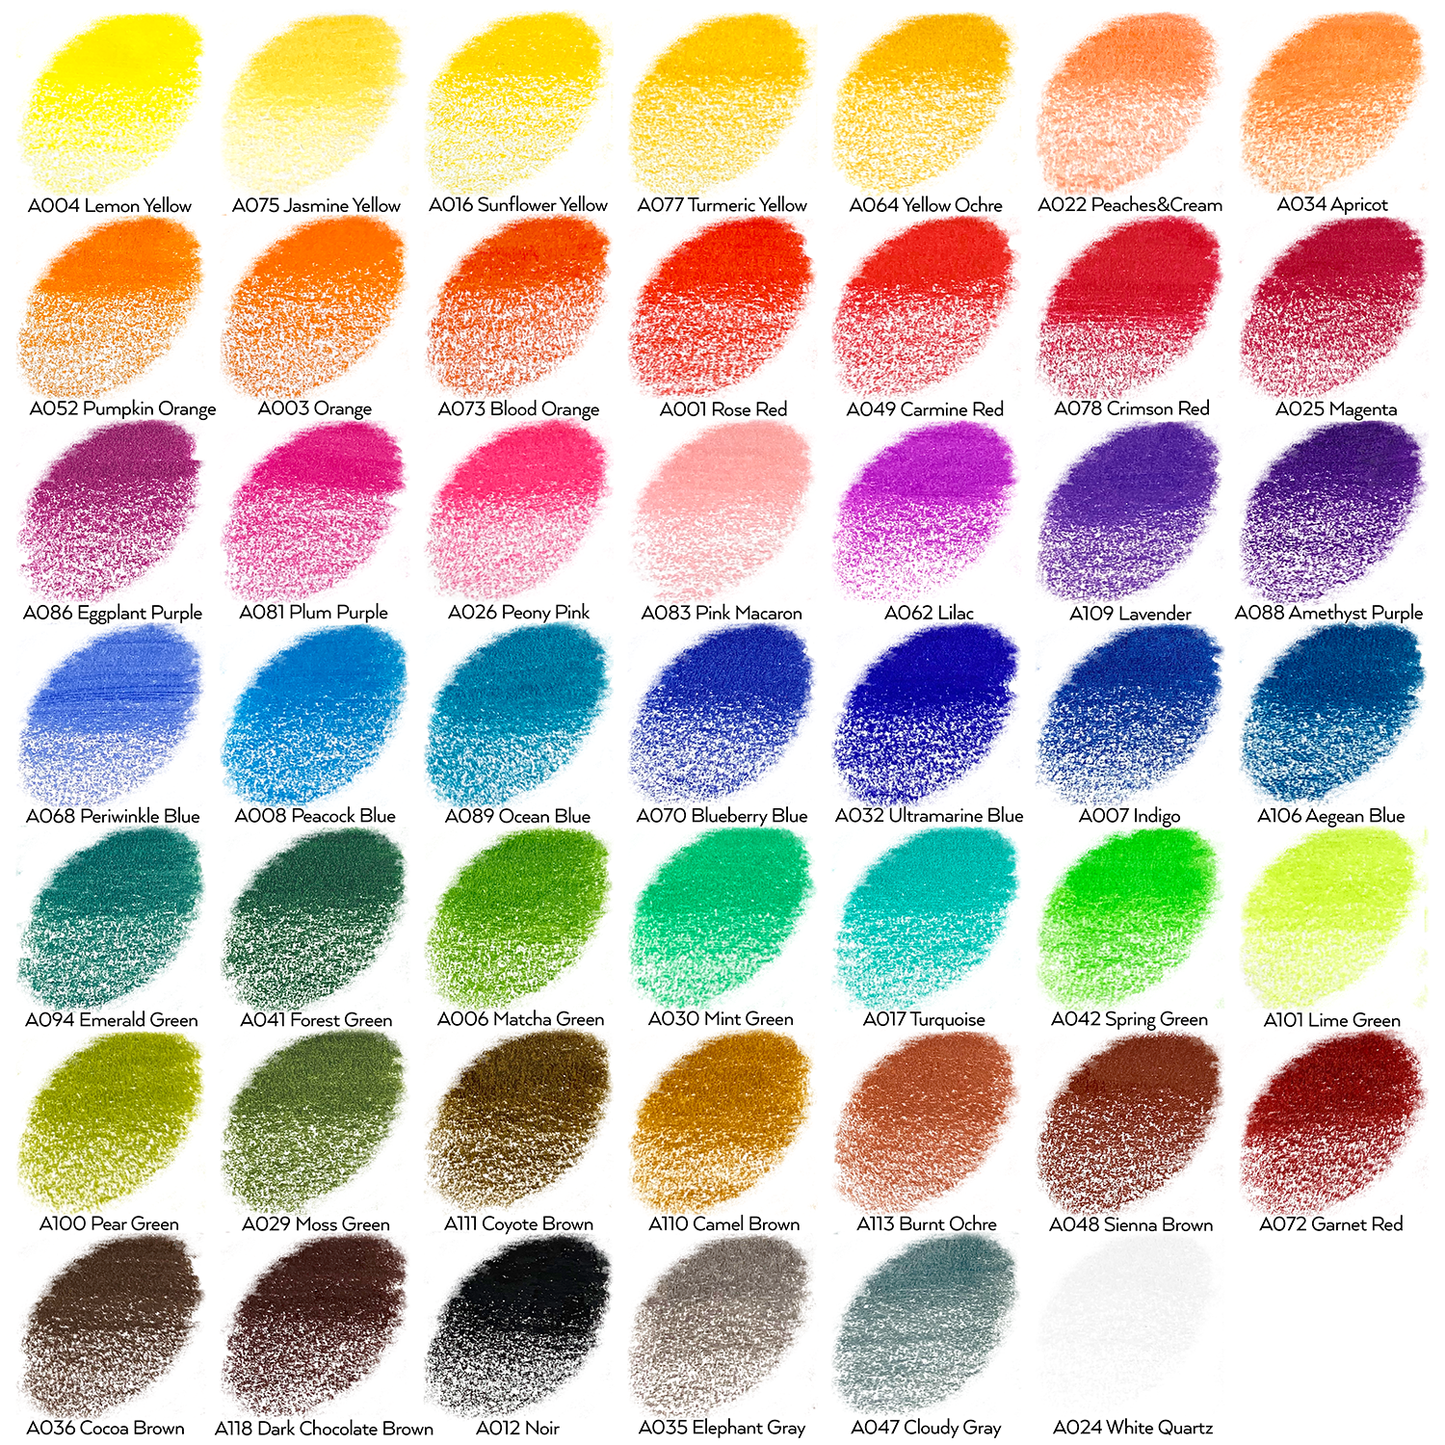  Arteza Colored Pencils, 48 Colors and Arteza 8.3x11.7